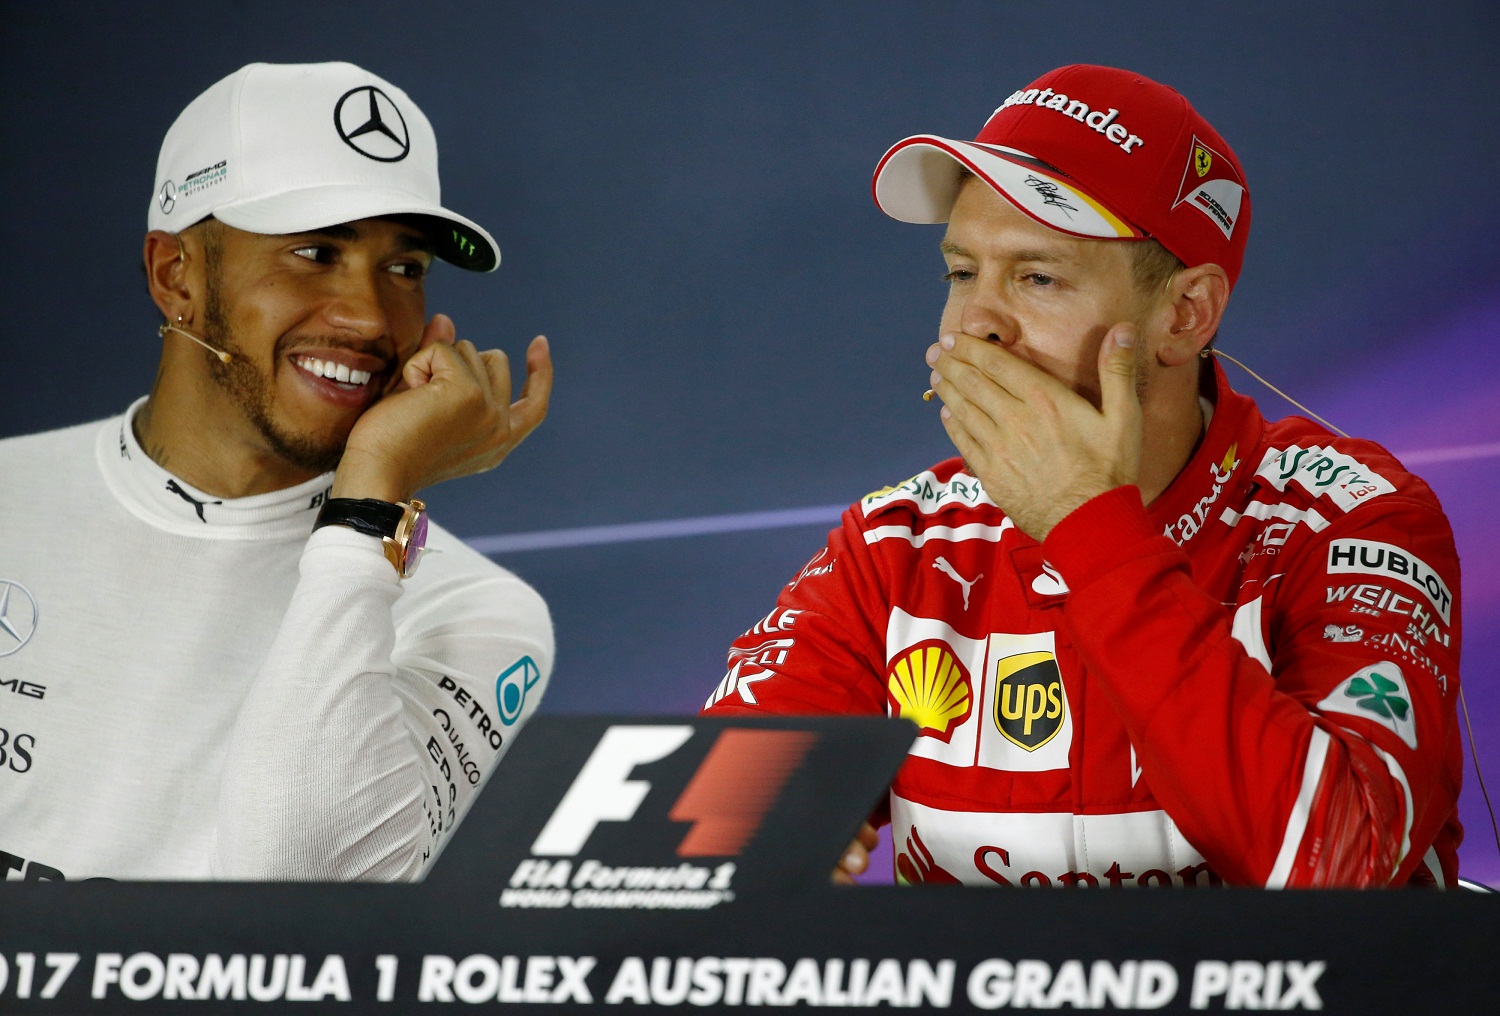 Hamilton prepara su contraataque a Vettel en Shanghái